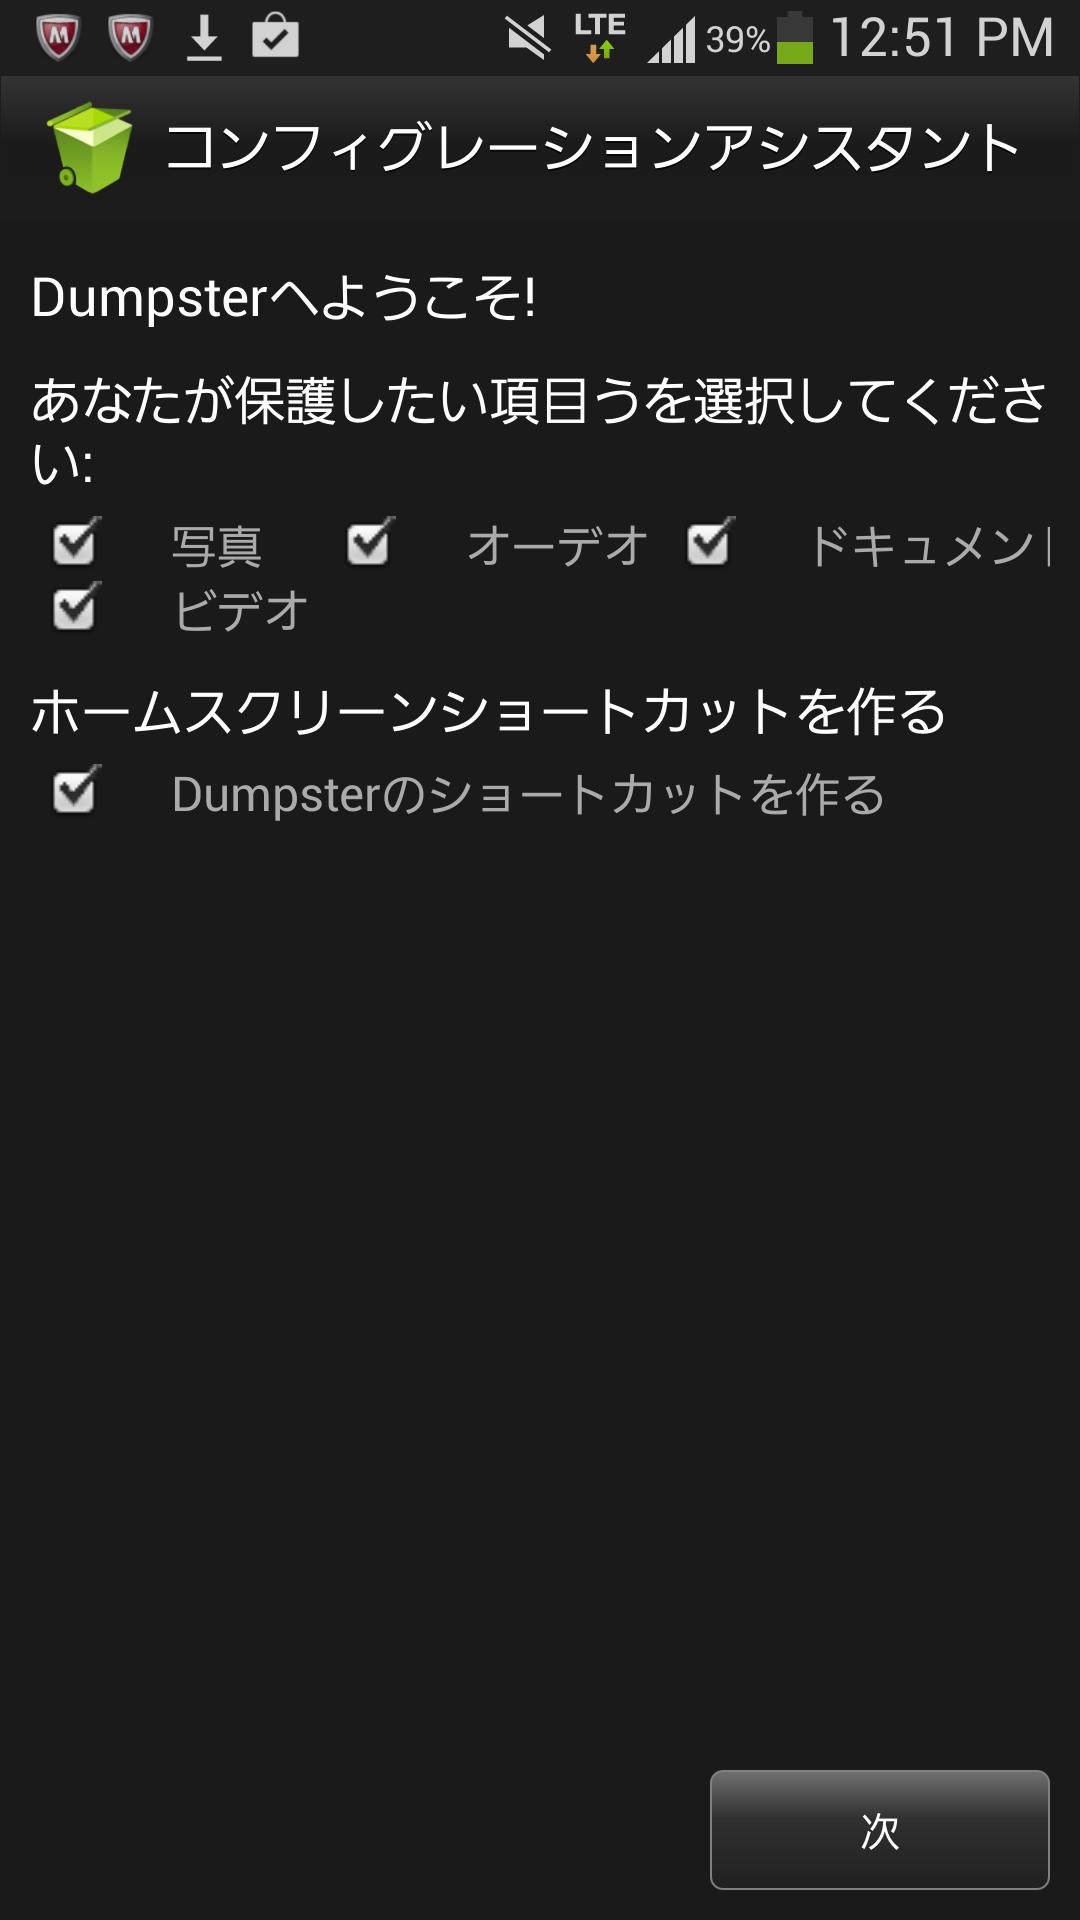 Dumpster - ごみ箱